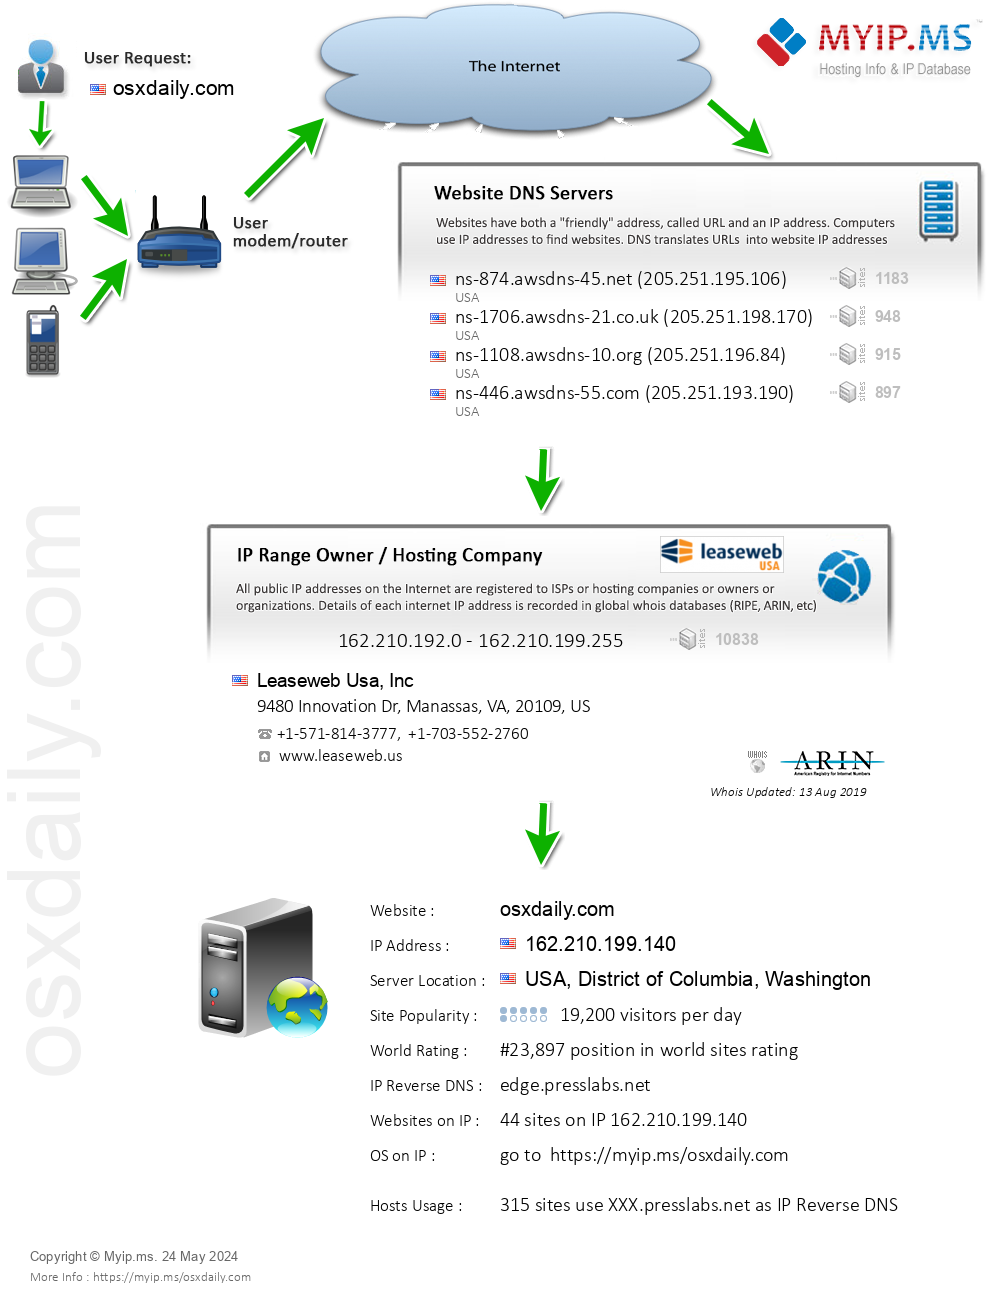 Osxdaily.com - Website Hosting Visual IP Diagram